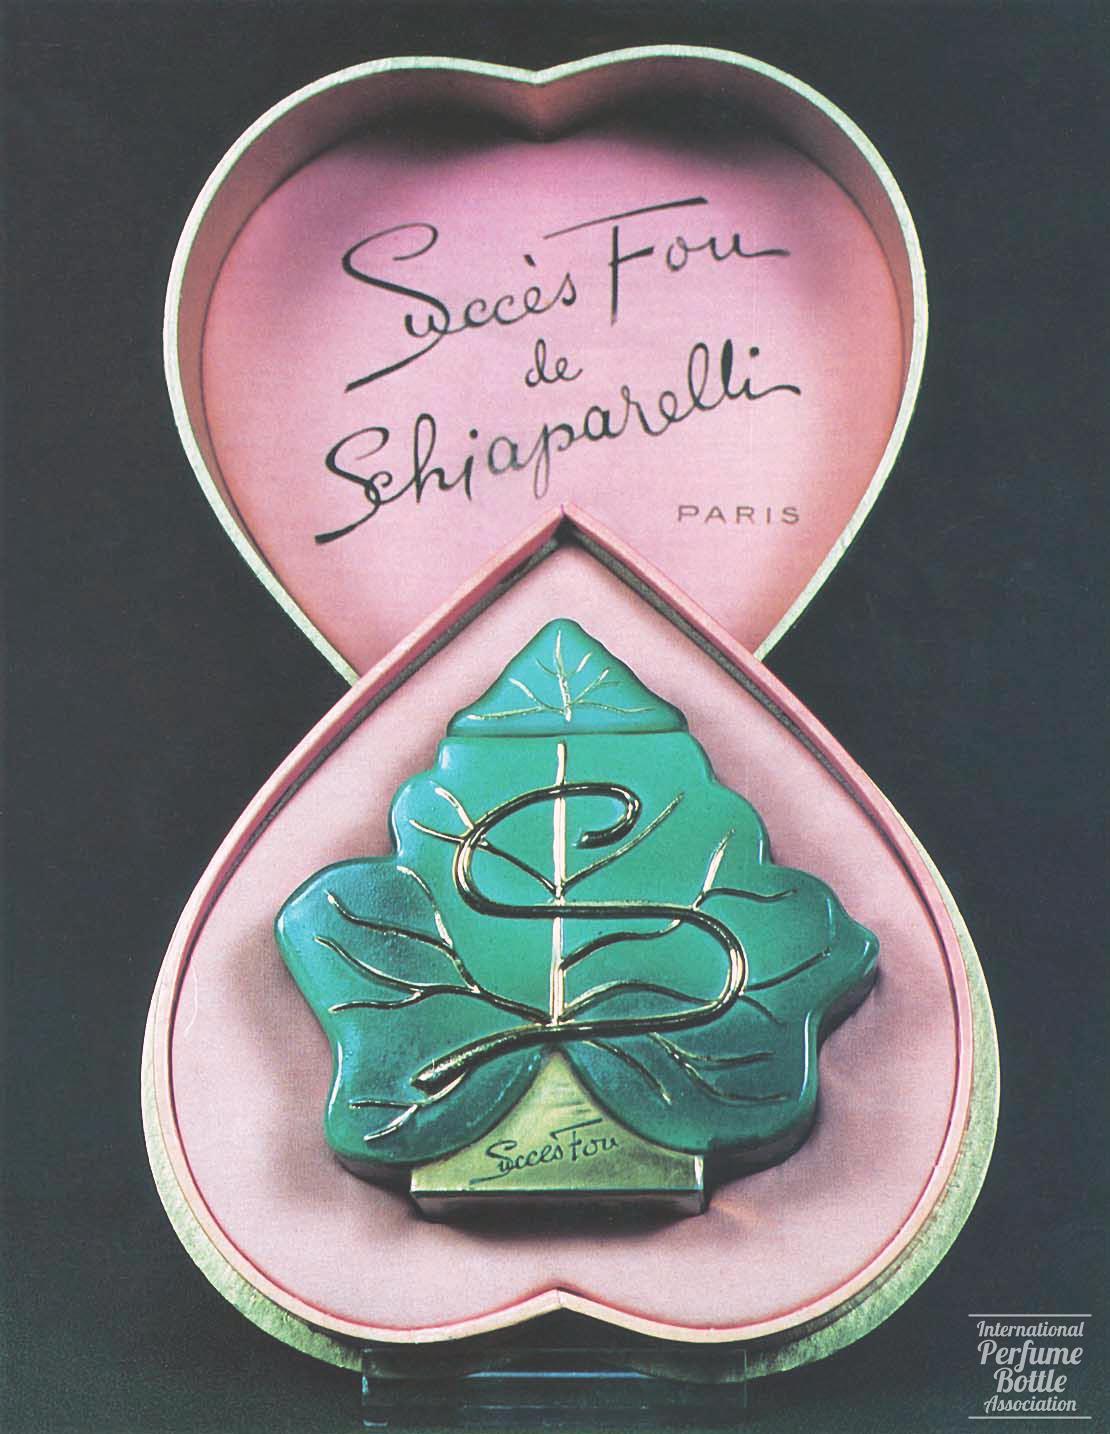 "Succés Fou" by Schiaparelli